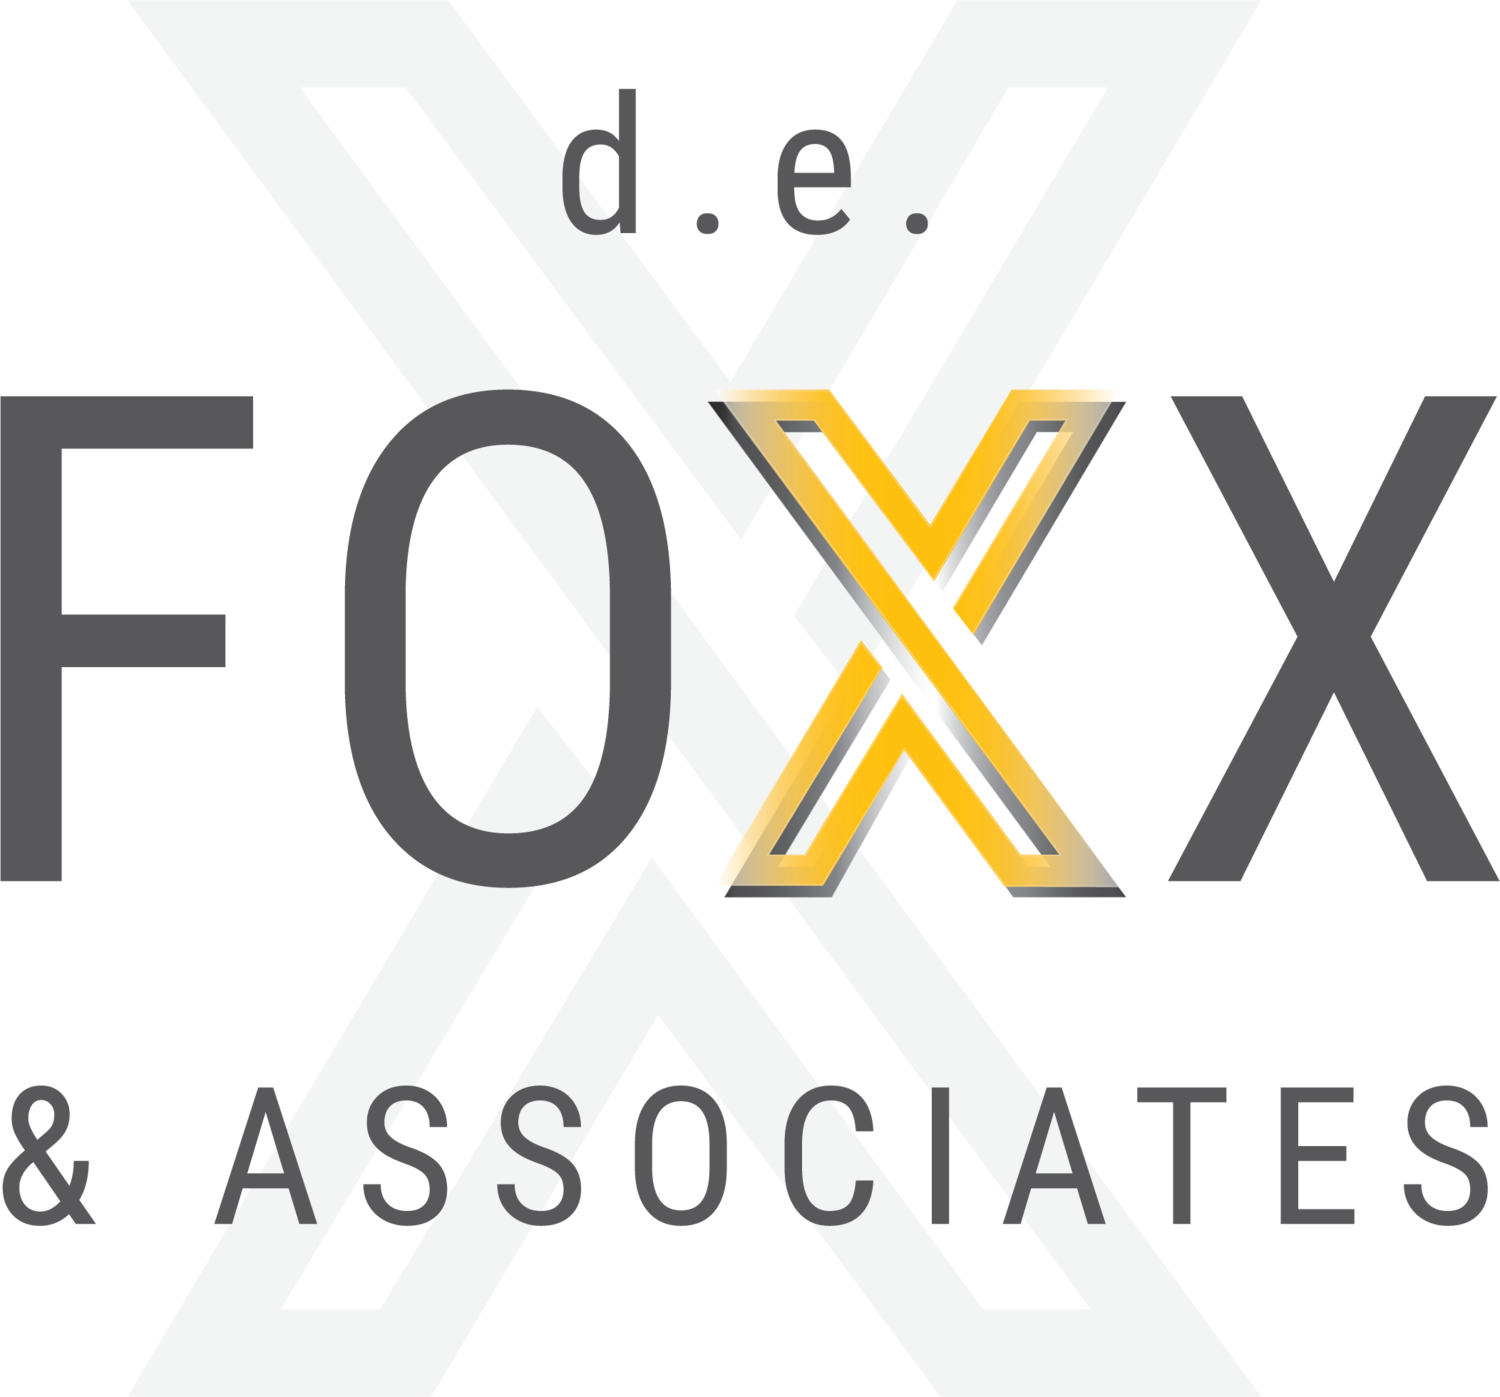 d.e. Foxx &amp; Associates